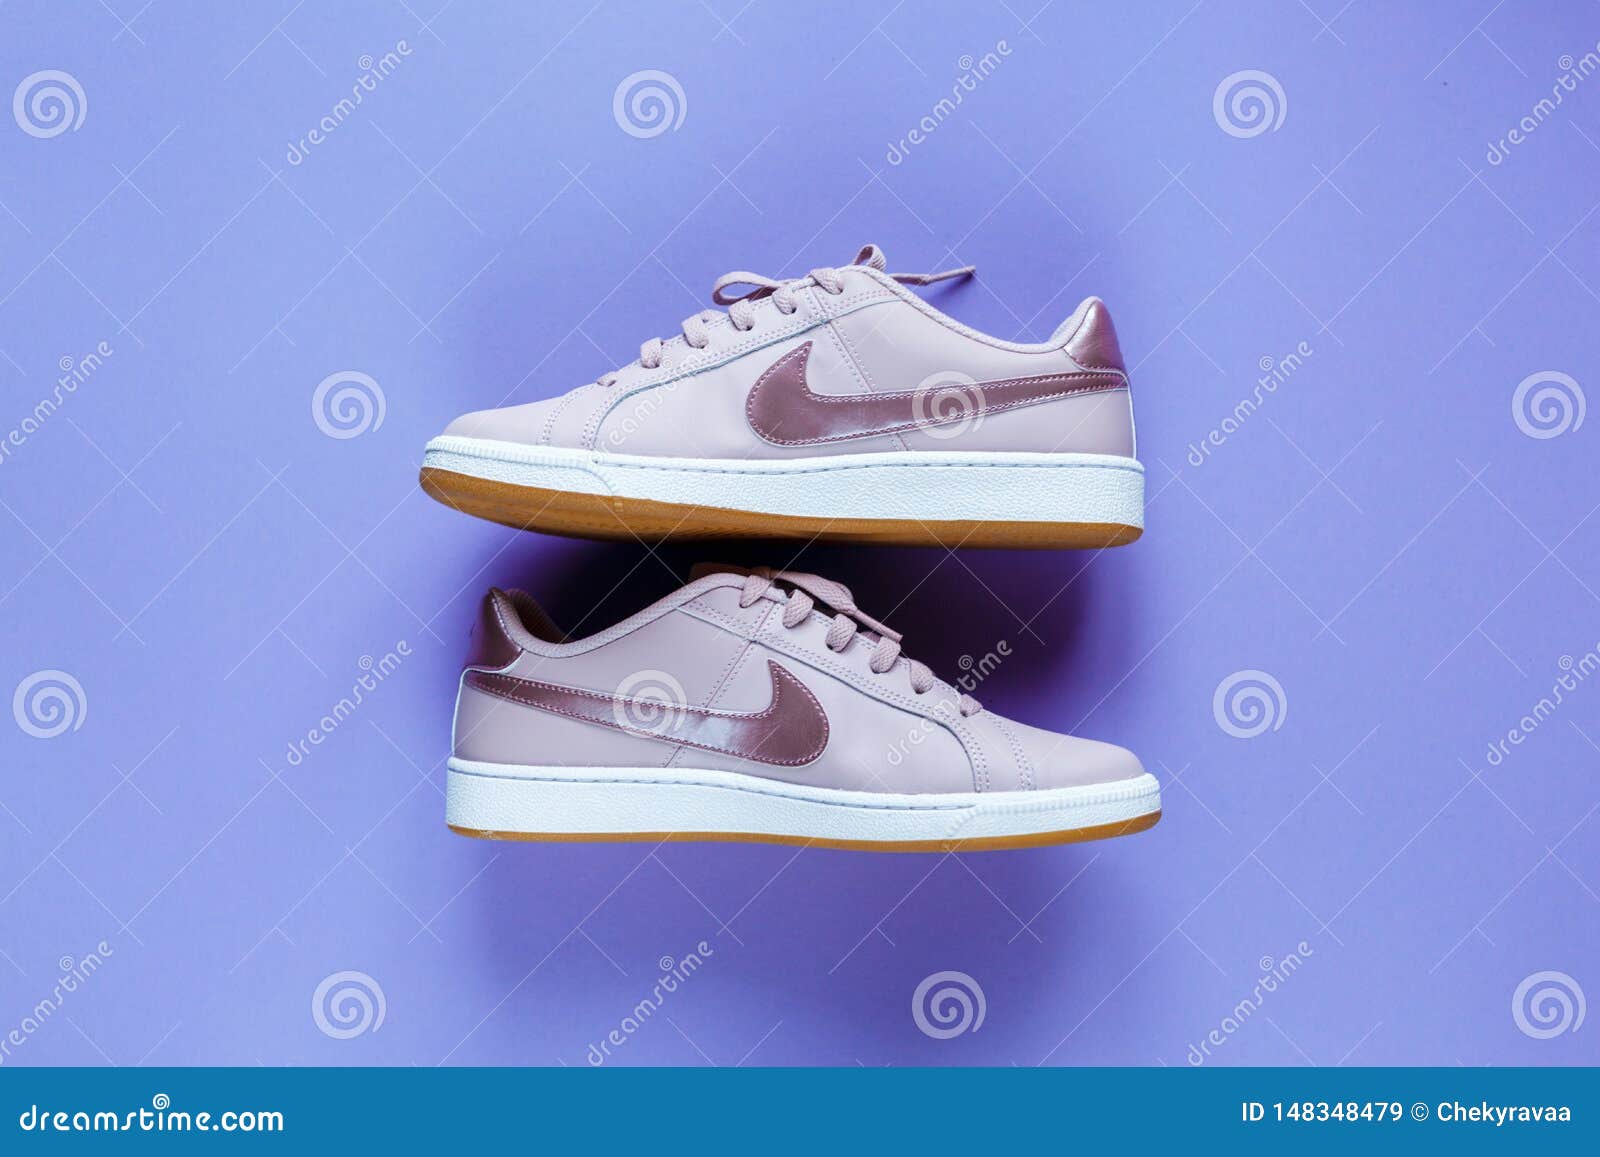 Nike Tennis Classic Subi? Zapatilla De Deporte Rosada El Fondo Violeta de archivo editorial - Imagen de zapato, concepto: 148348479